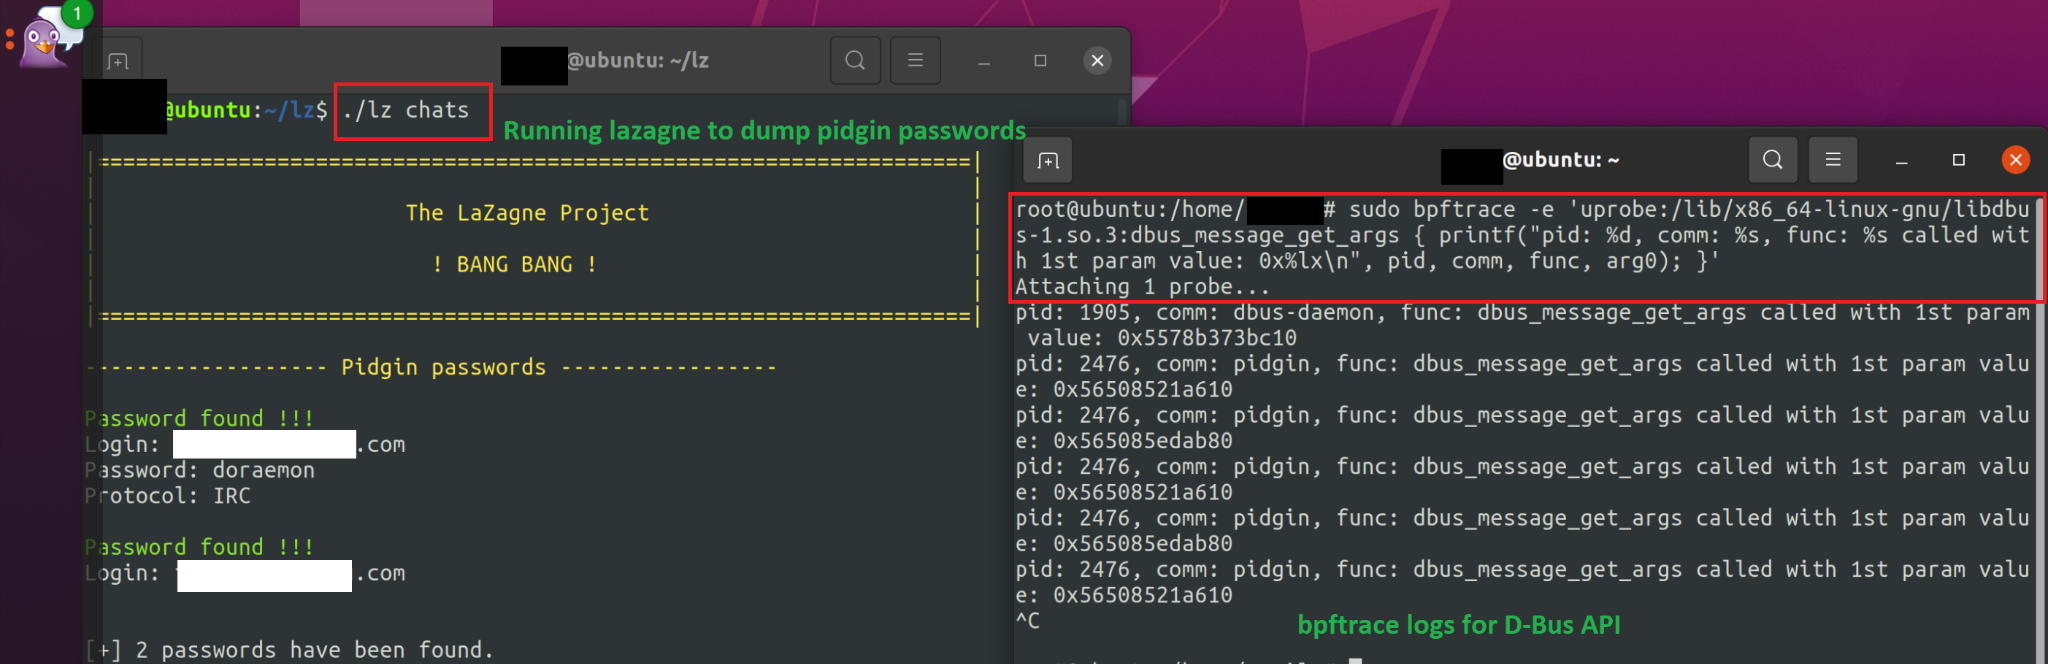 画像 5 は、2 つの異なるターミナルのスクリーンショットです。左のターミナルは LaZagne によって Pidgin のユーザー名とパスワードがダンプされた場所を示しています。右のターミナルには API コールのログが記録されています。